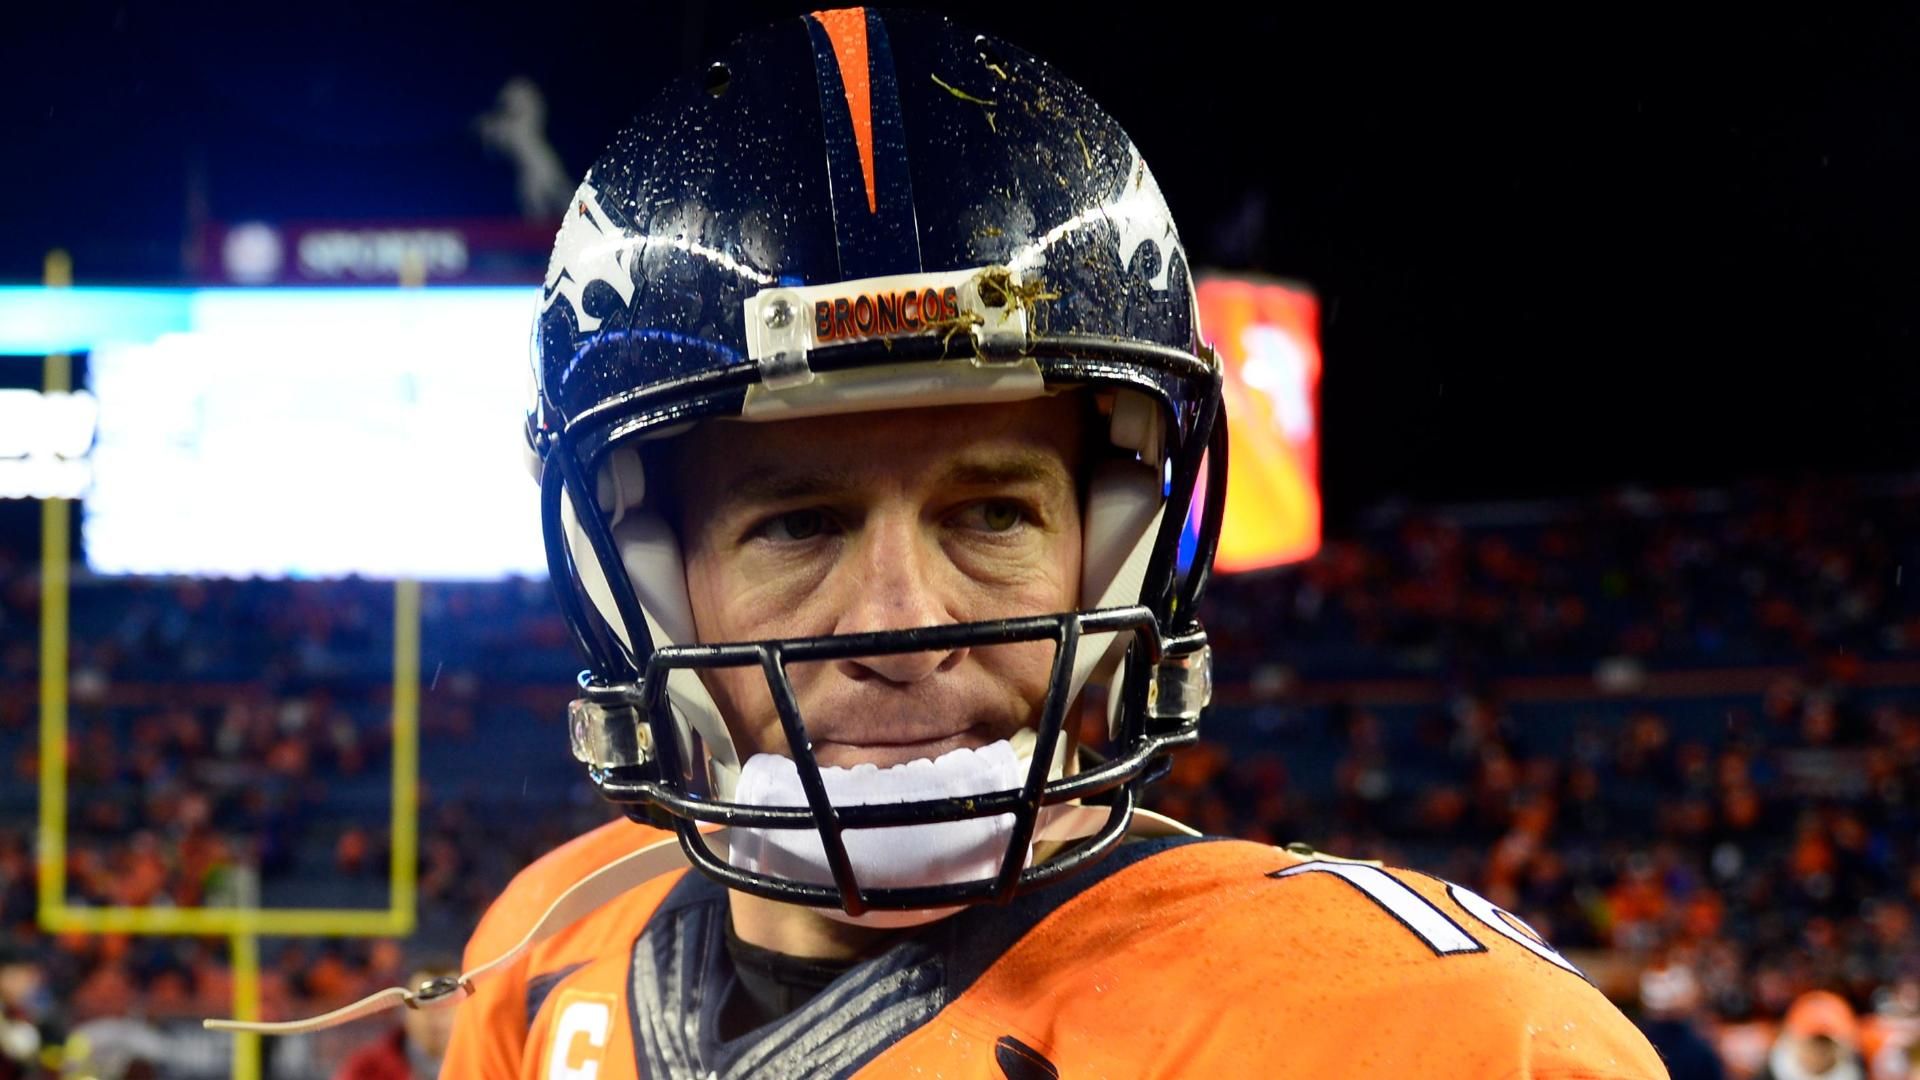 Has Peyton Manning Played His Last Game?